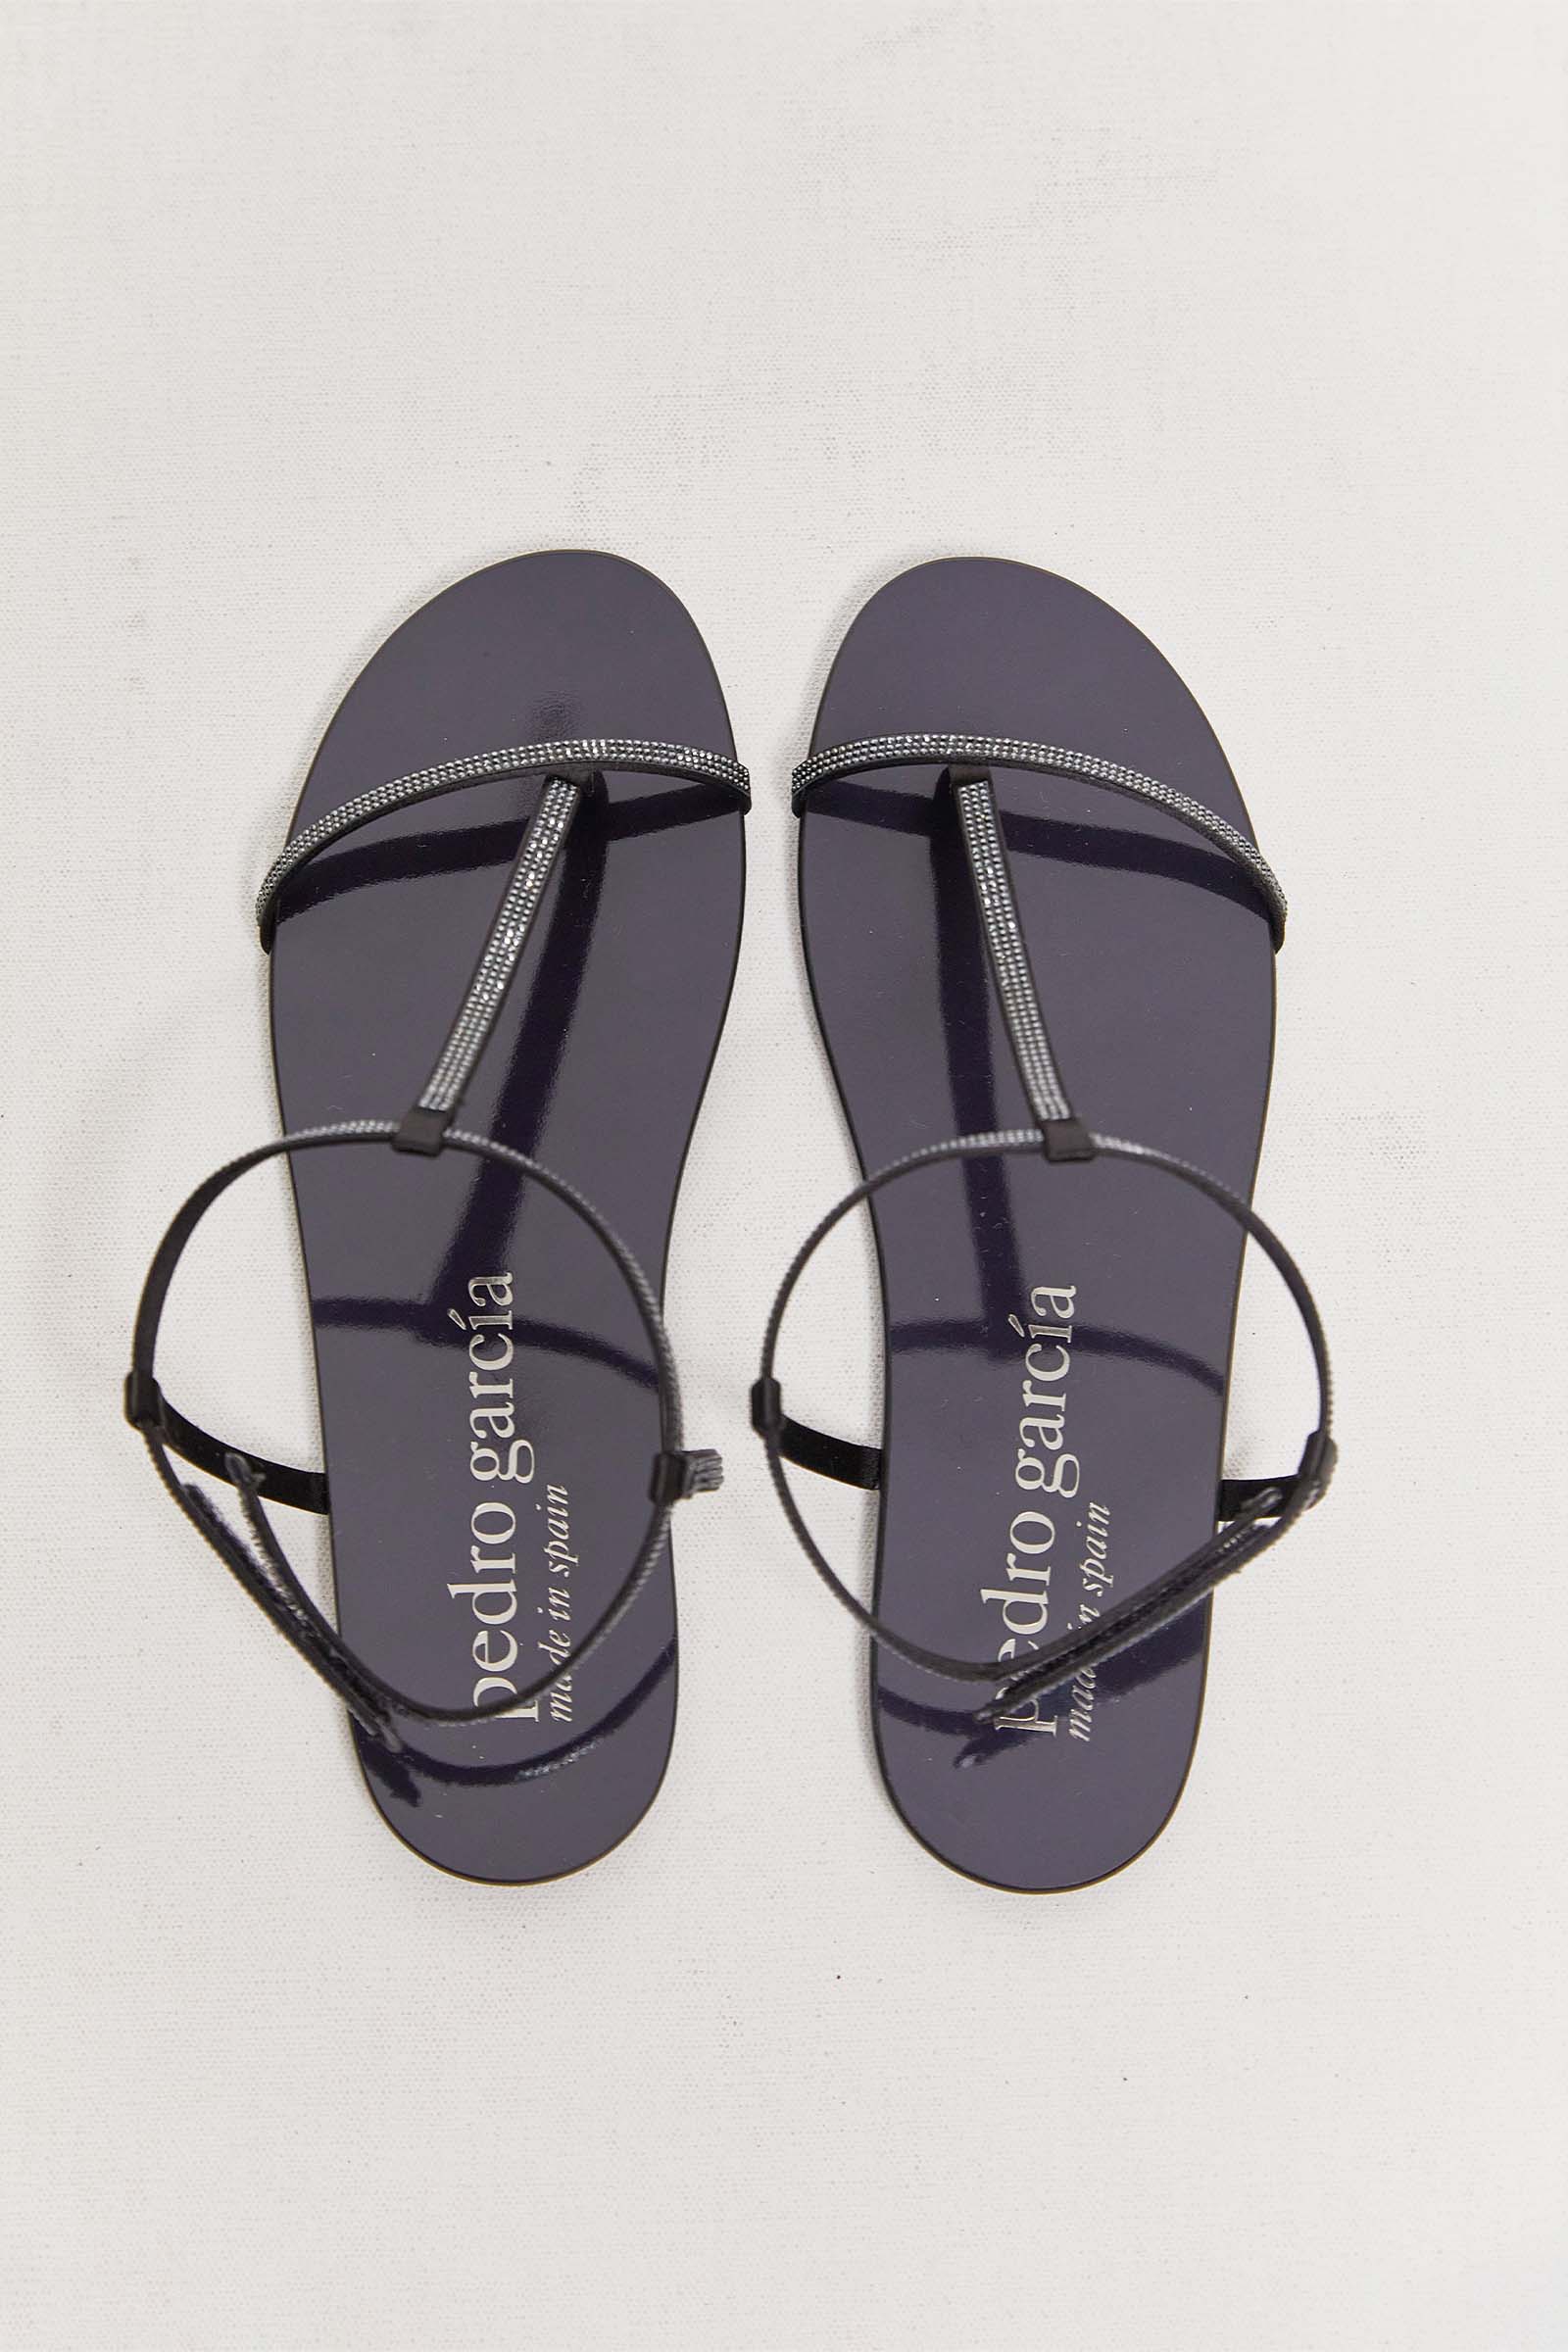 byfreer pedro garcia obsidian swarovski sandals.